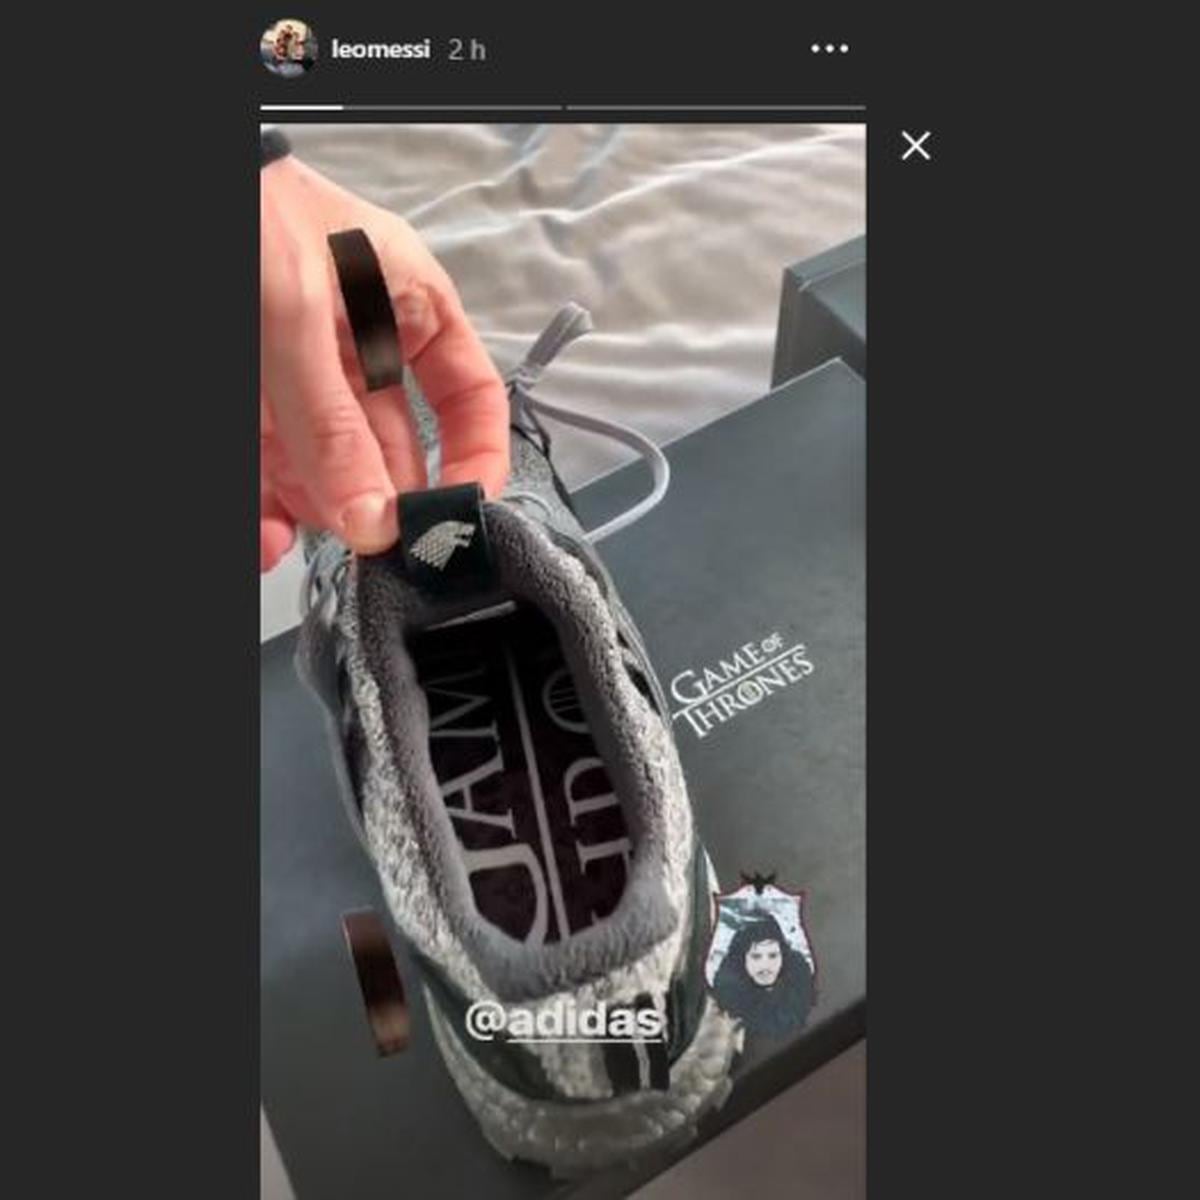 Game Of Thrones temporada 8: Lionel Messi presentó alucinantes zapatillas Adidas con motivo de | PRIMER CAPITULO filtrado | VIDEO | FUTBOL-INTERNACIONAL | DEPOR